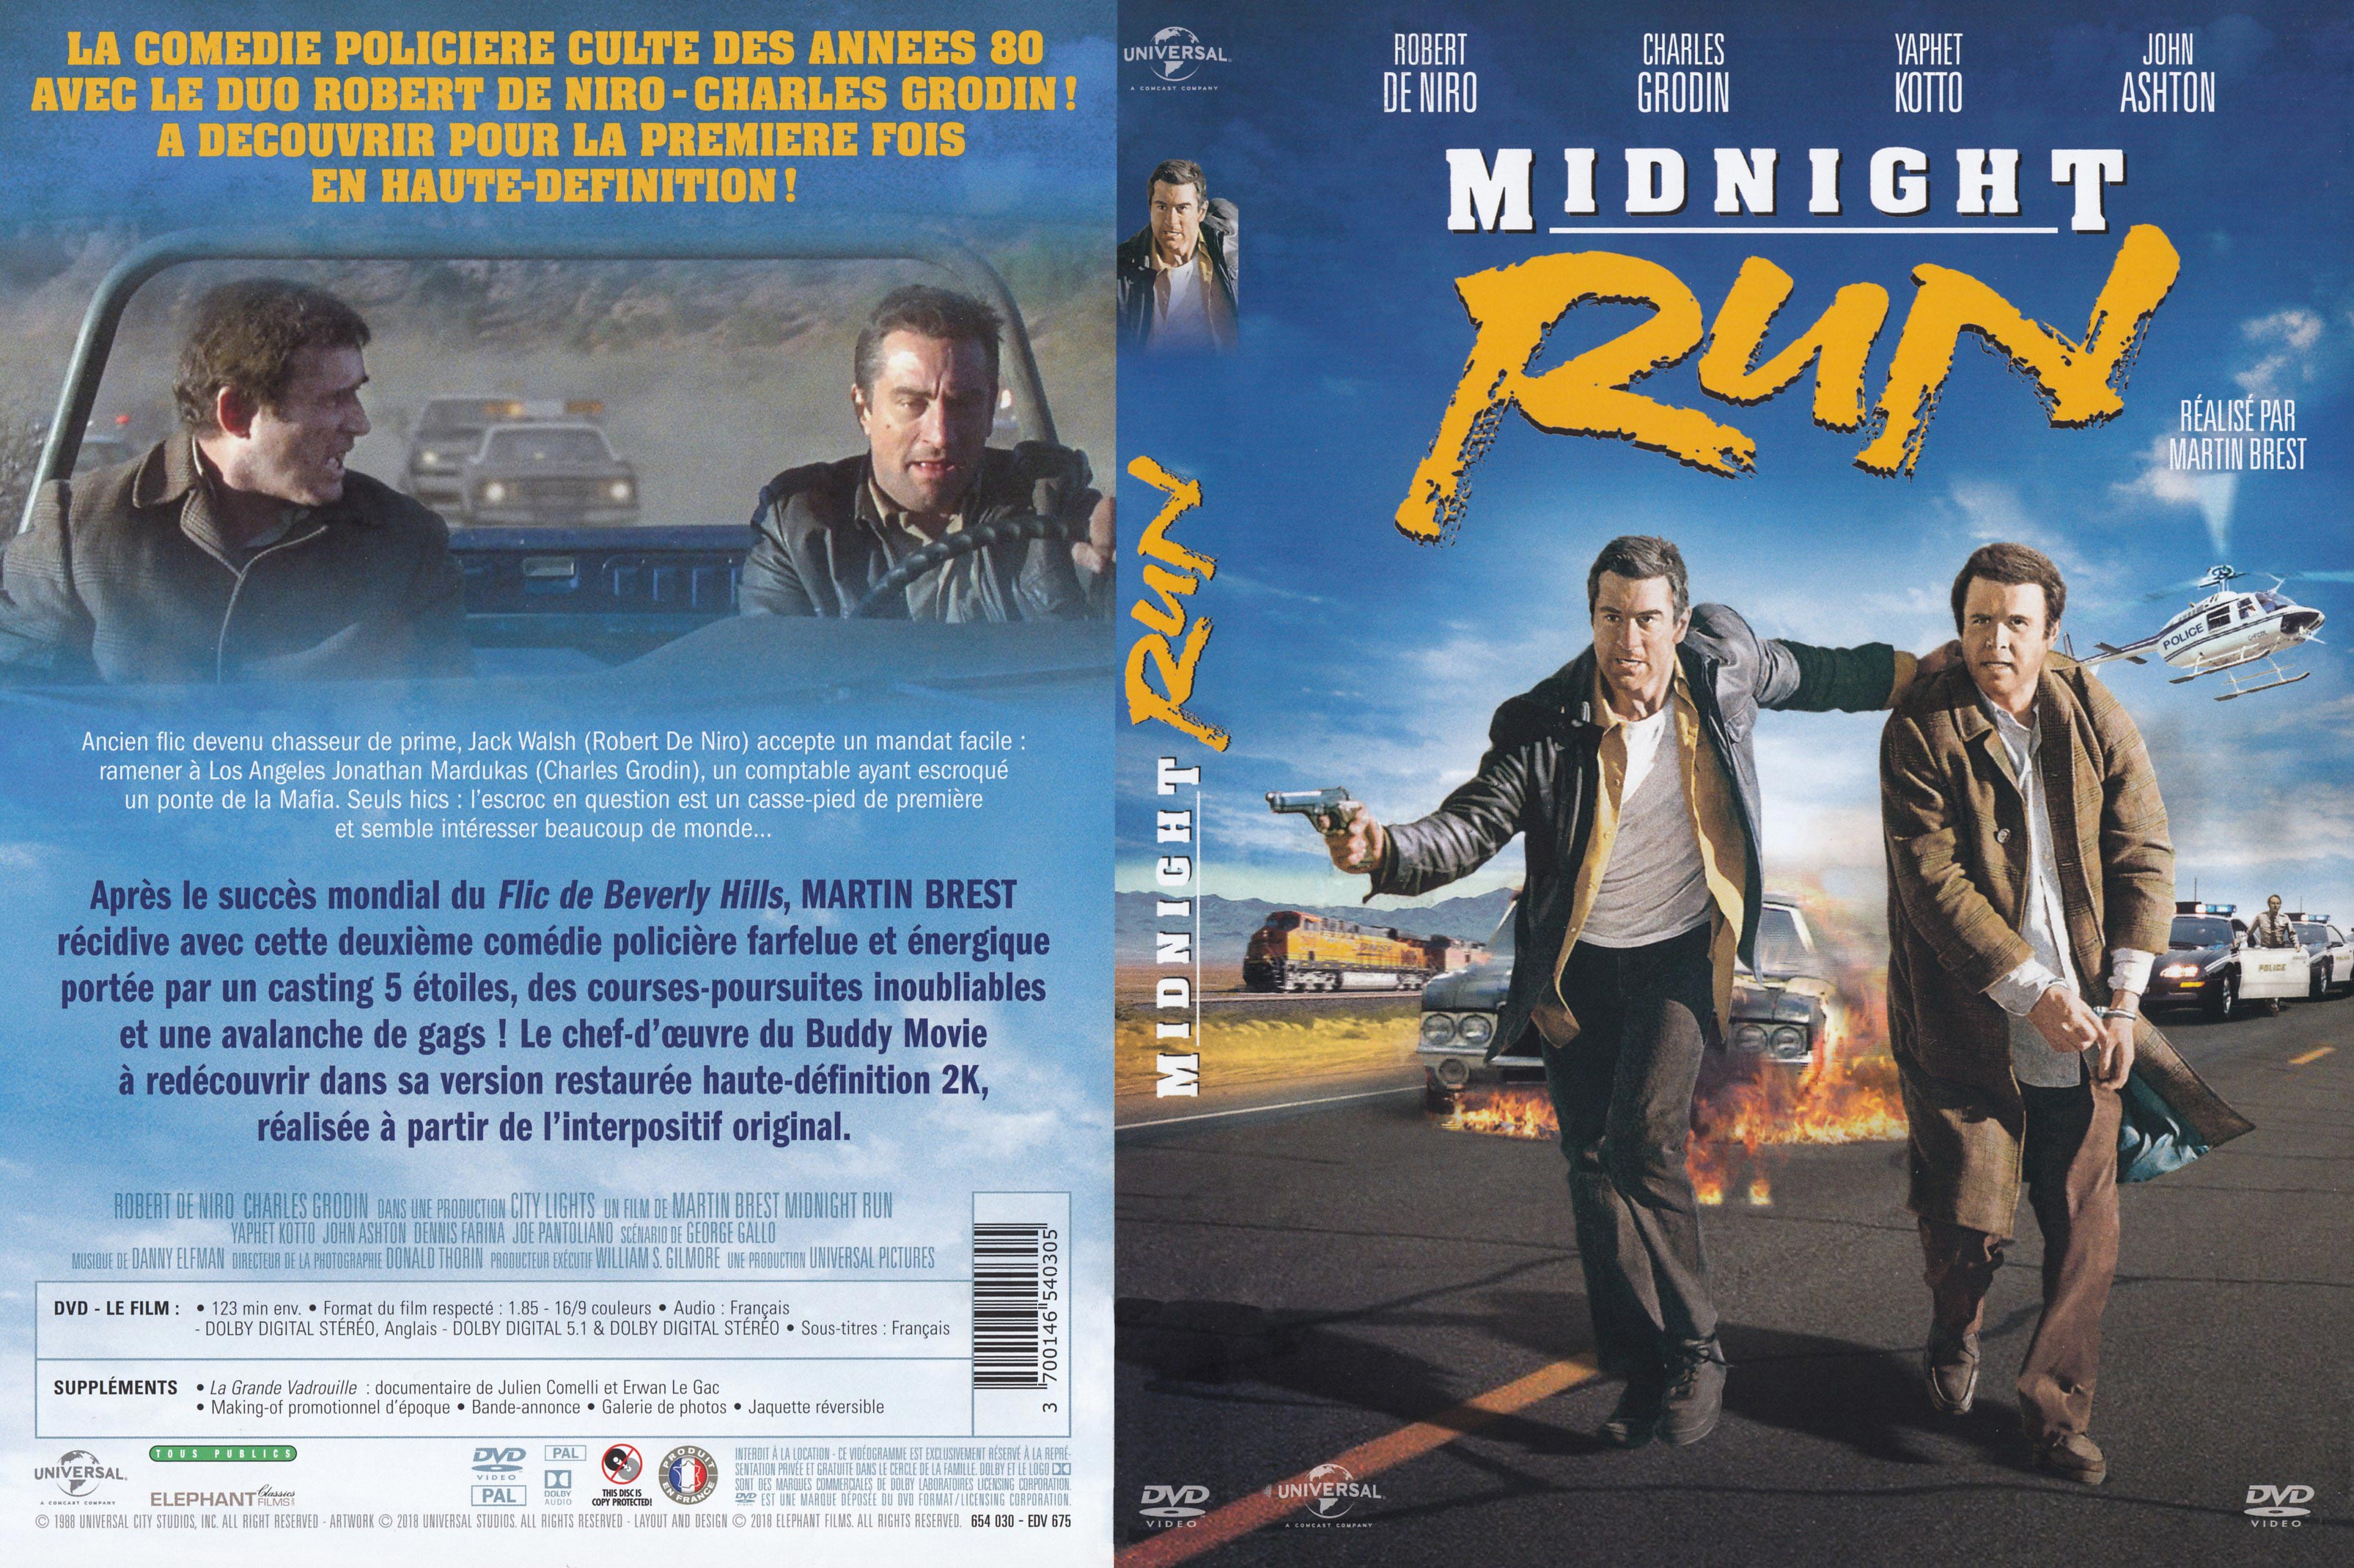 Jaquette DVD Midnight run v3